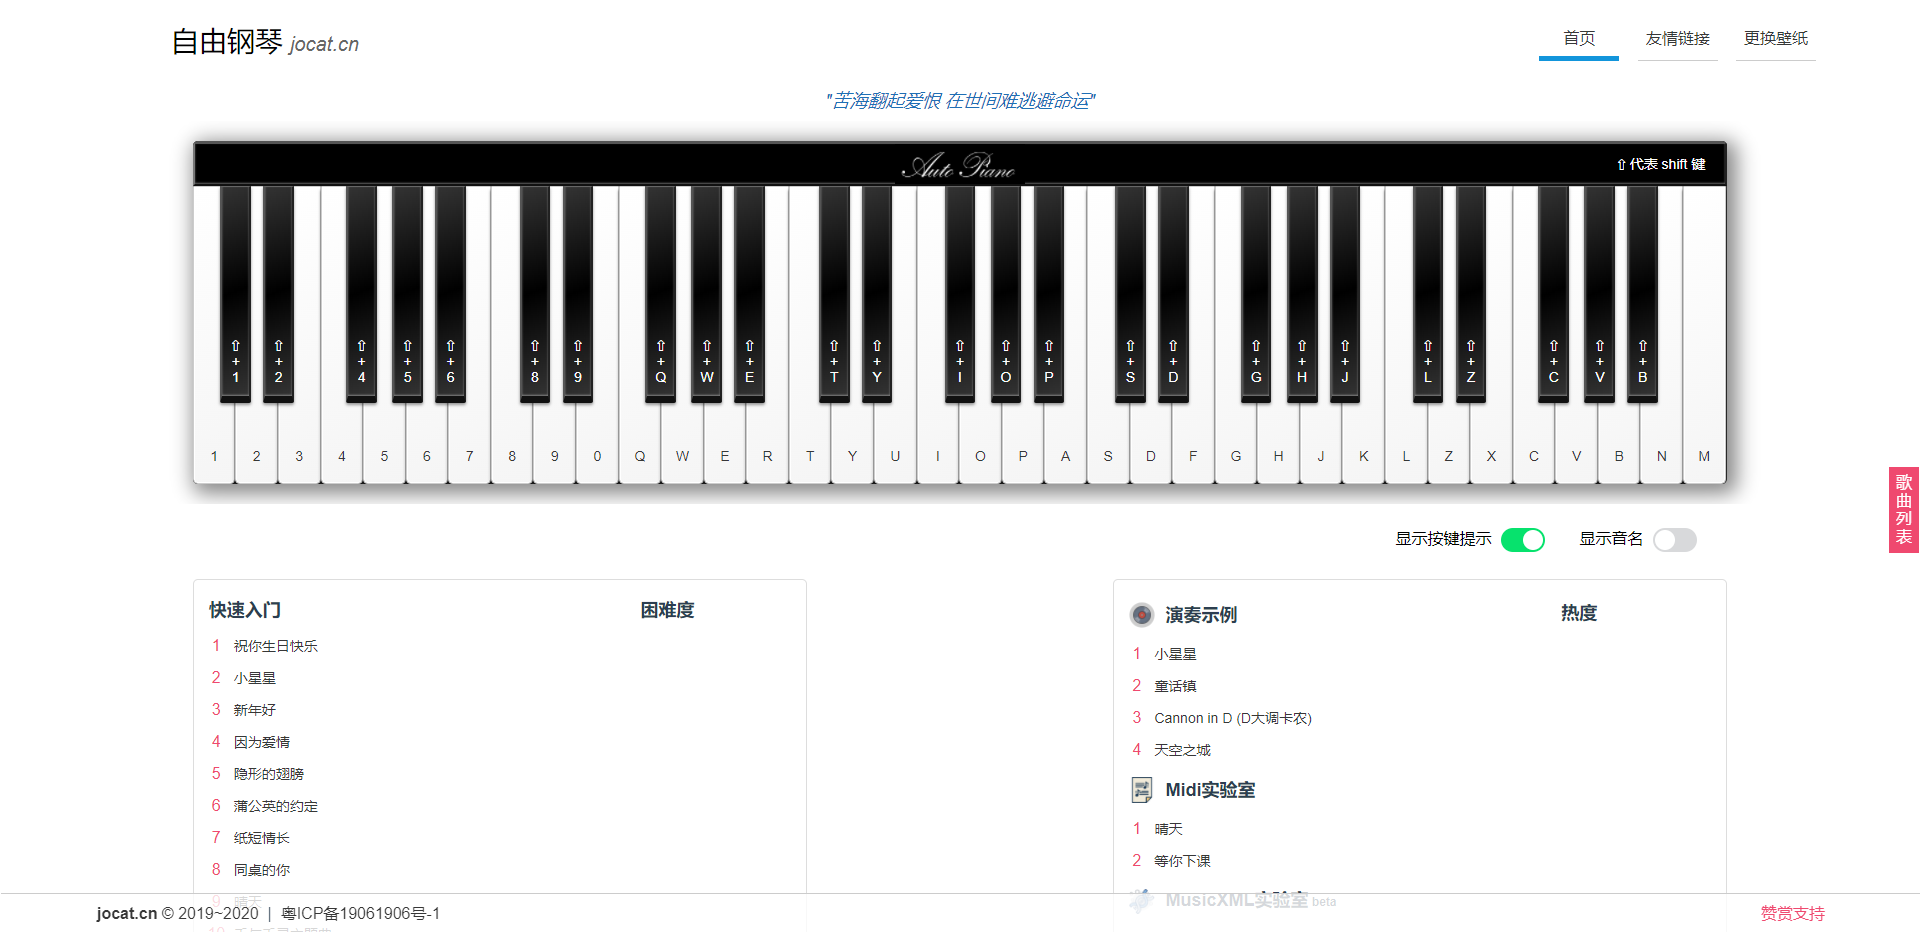 AutoPiano-在线弹钢琴模拟器网站源码-暗夜博客